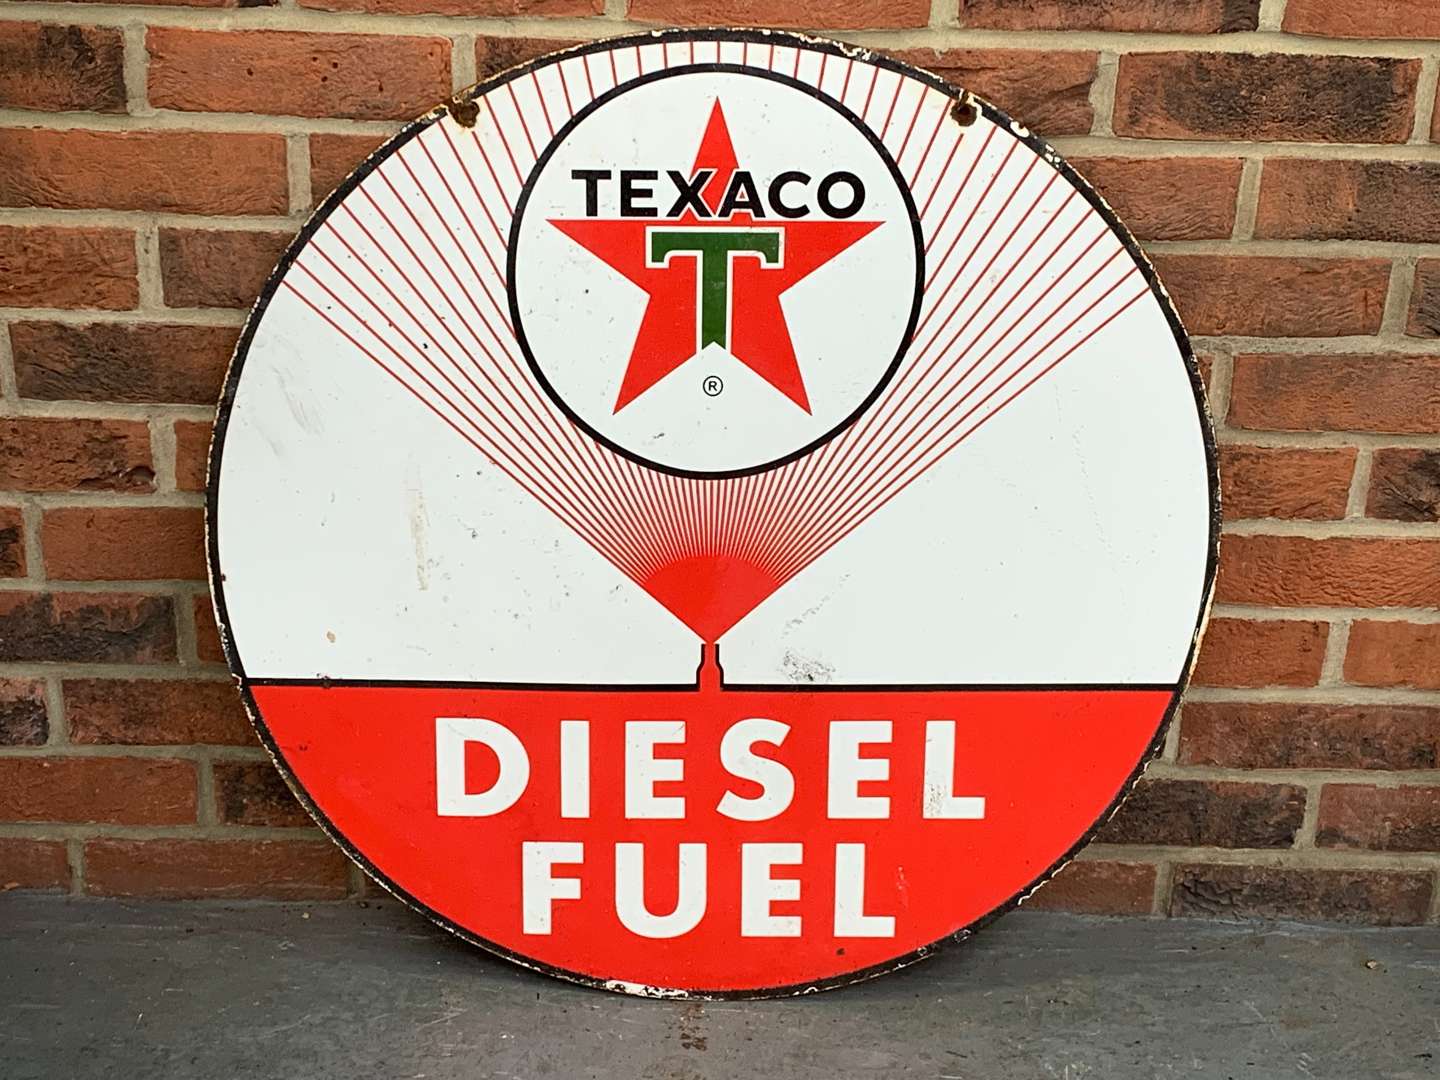 <p>Texaco Diesel Fuel Enamel Circular Sign</p>